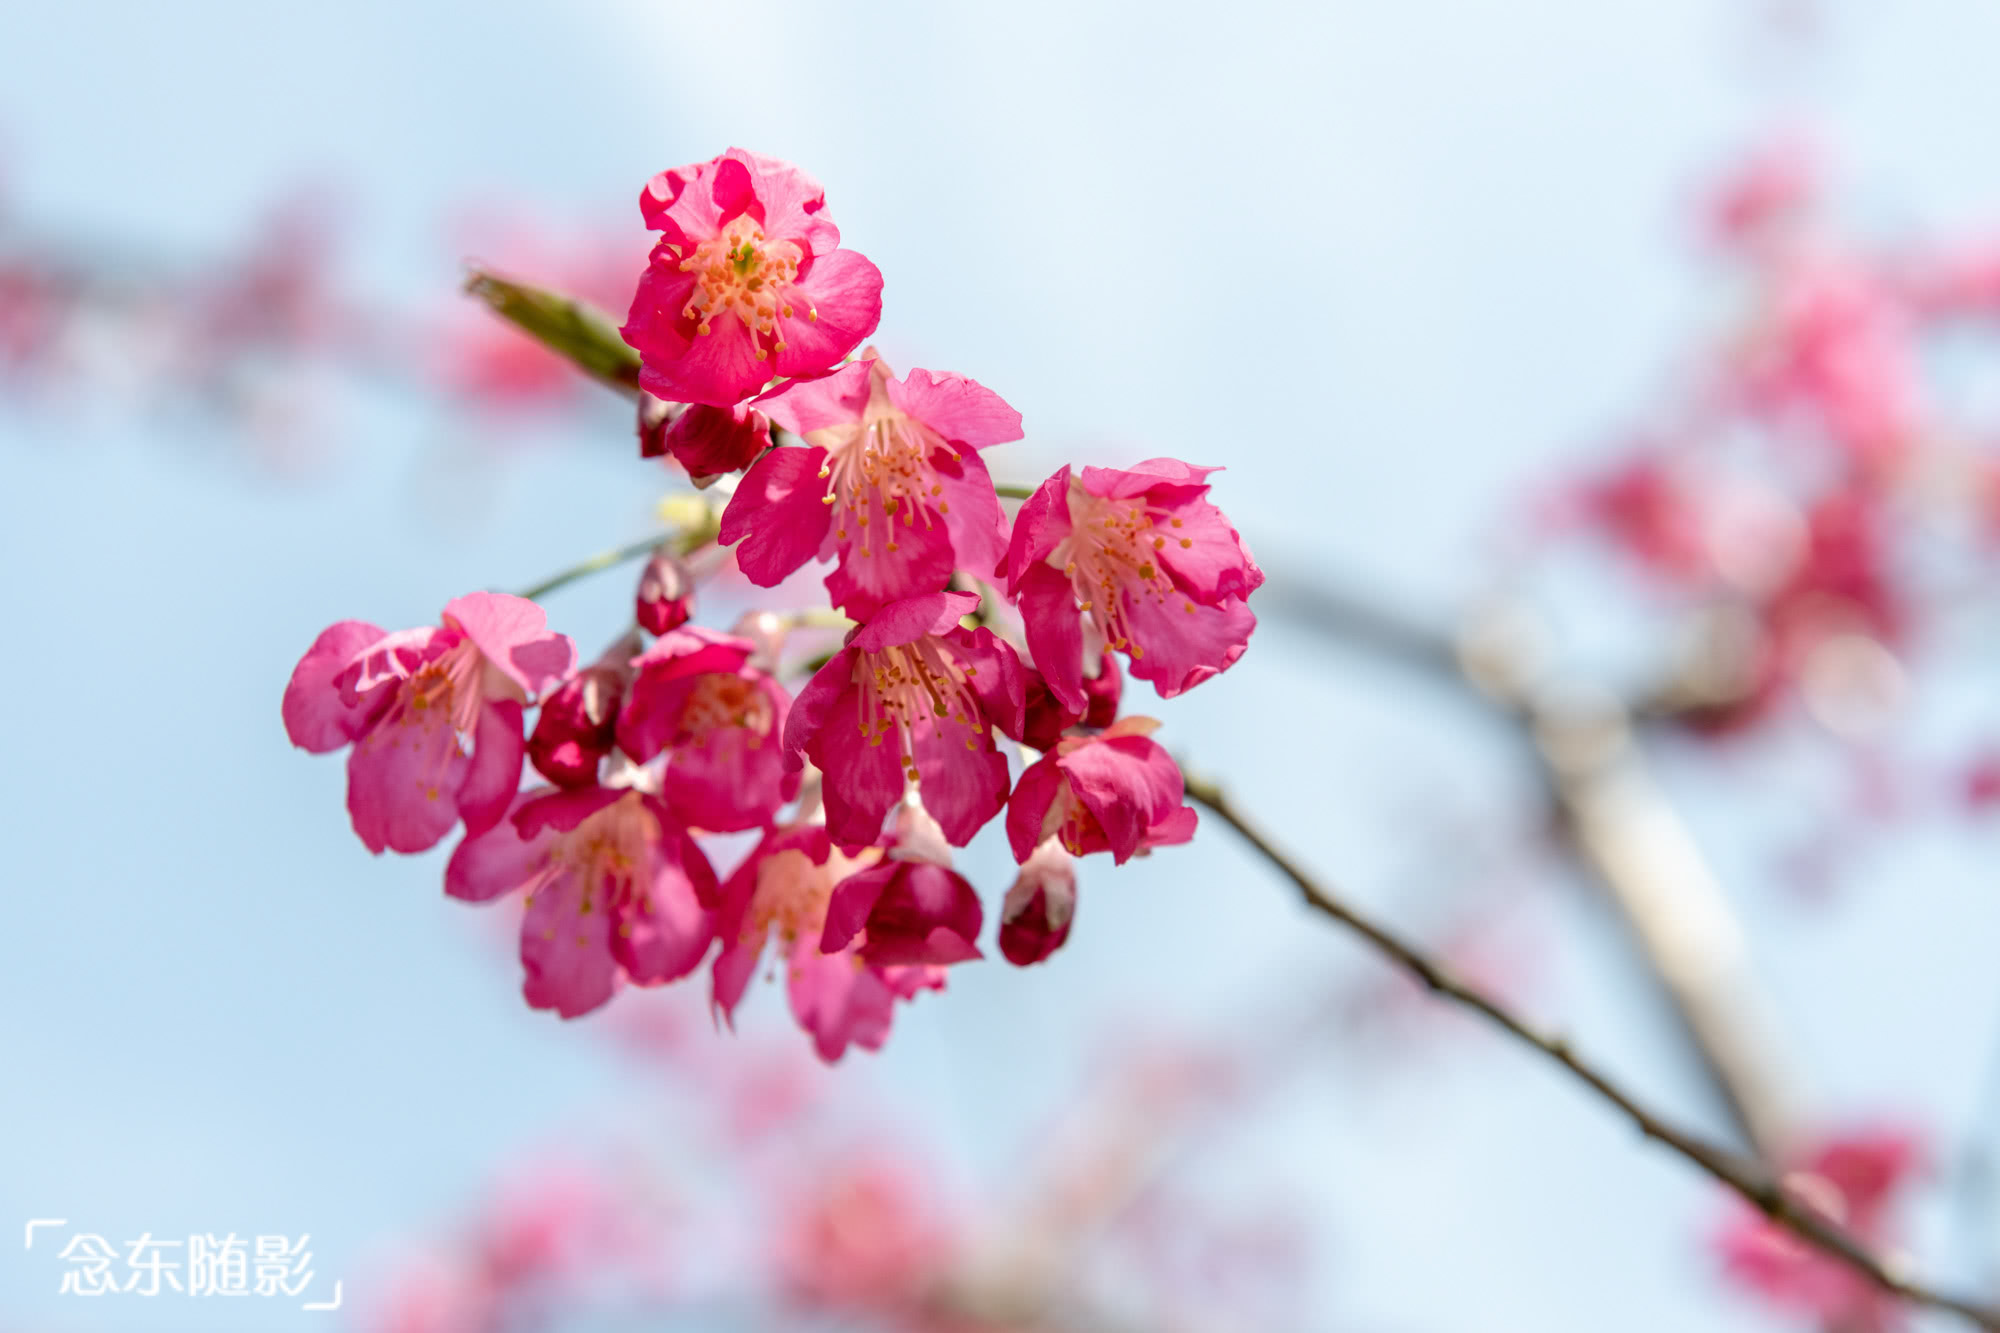 顾村公园樱花种植面积已达1200余亩,共有90多个樱花品种,1